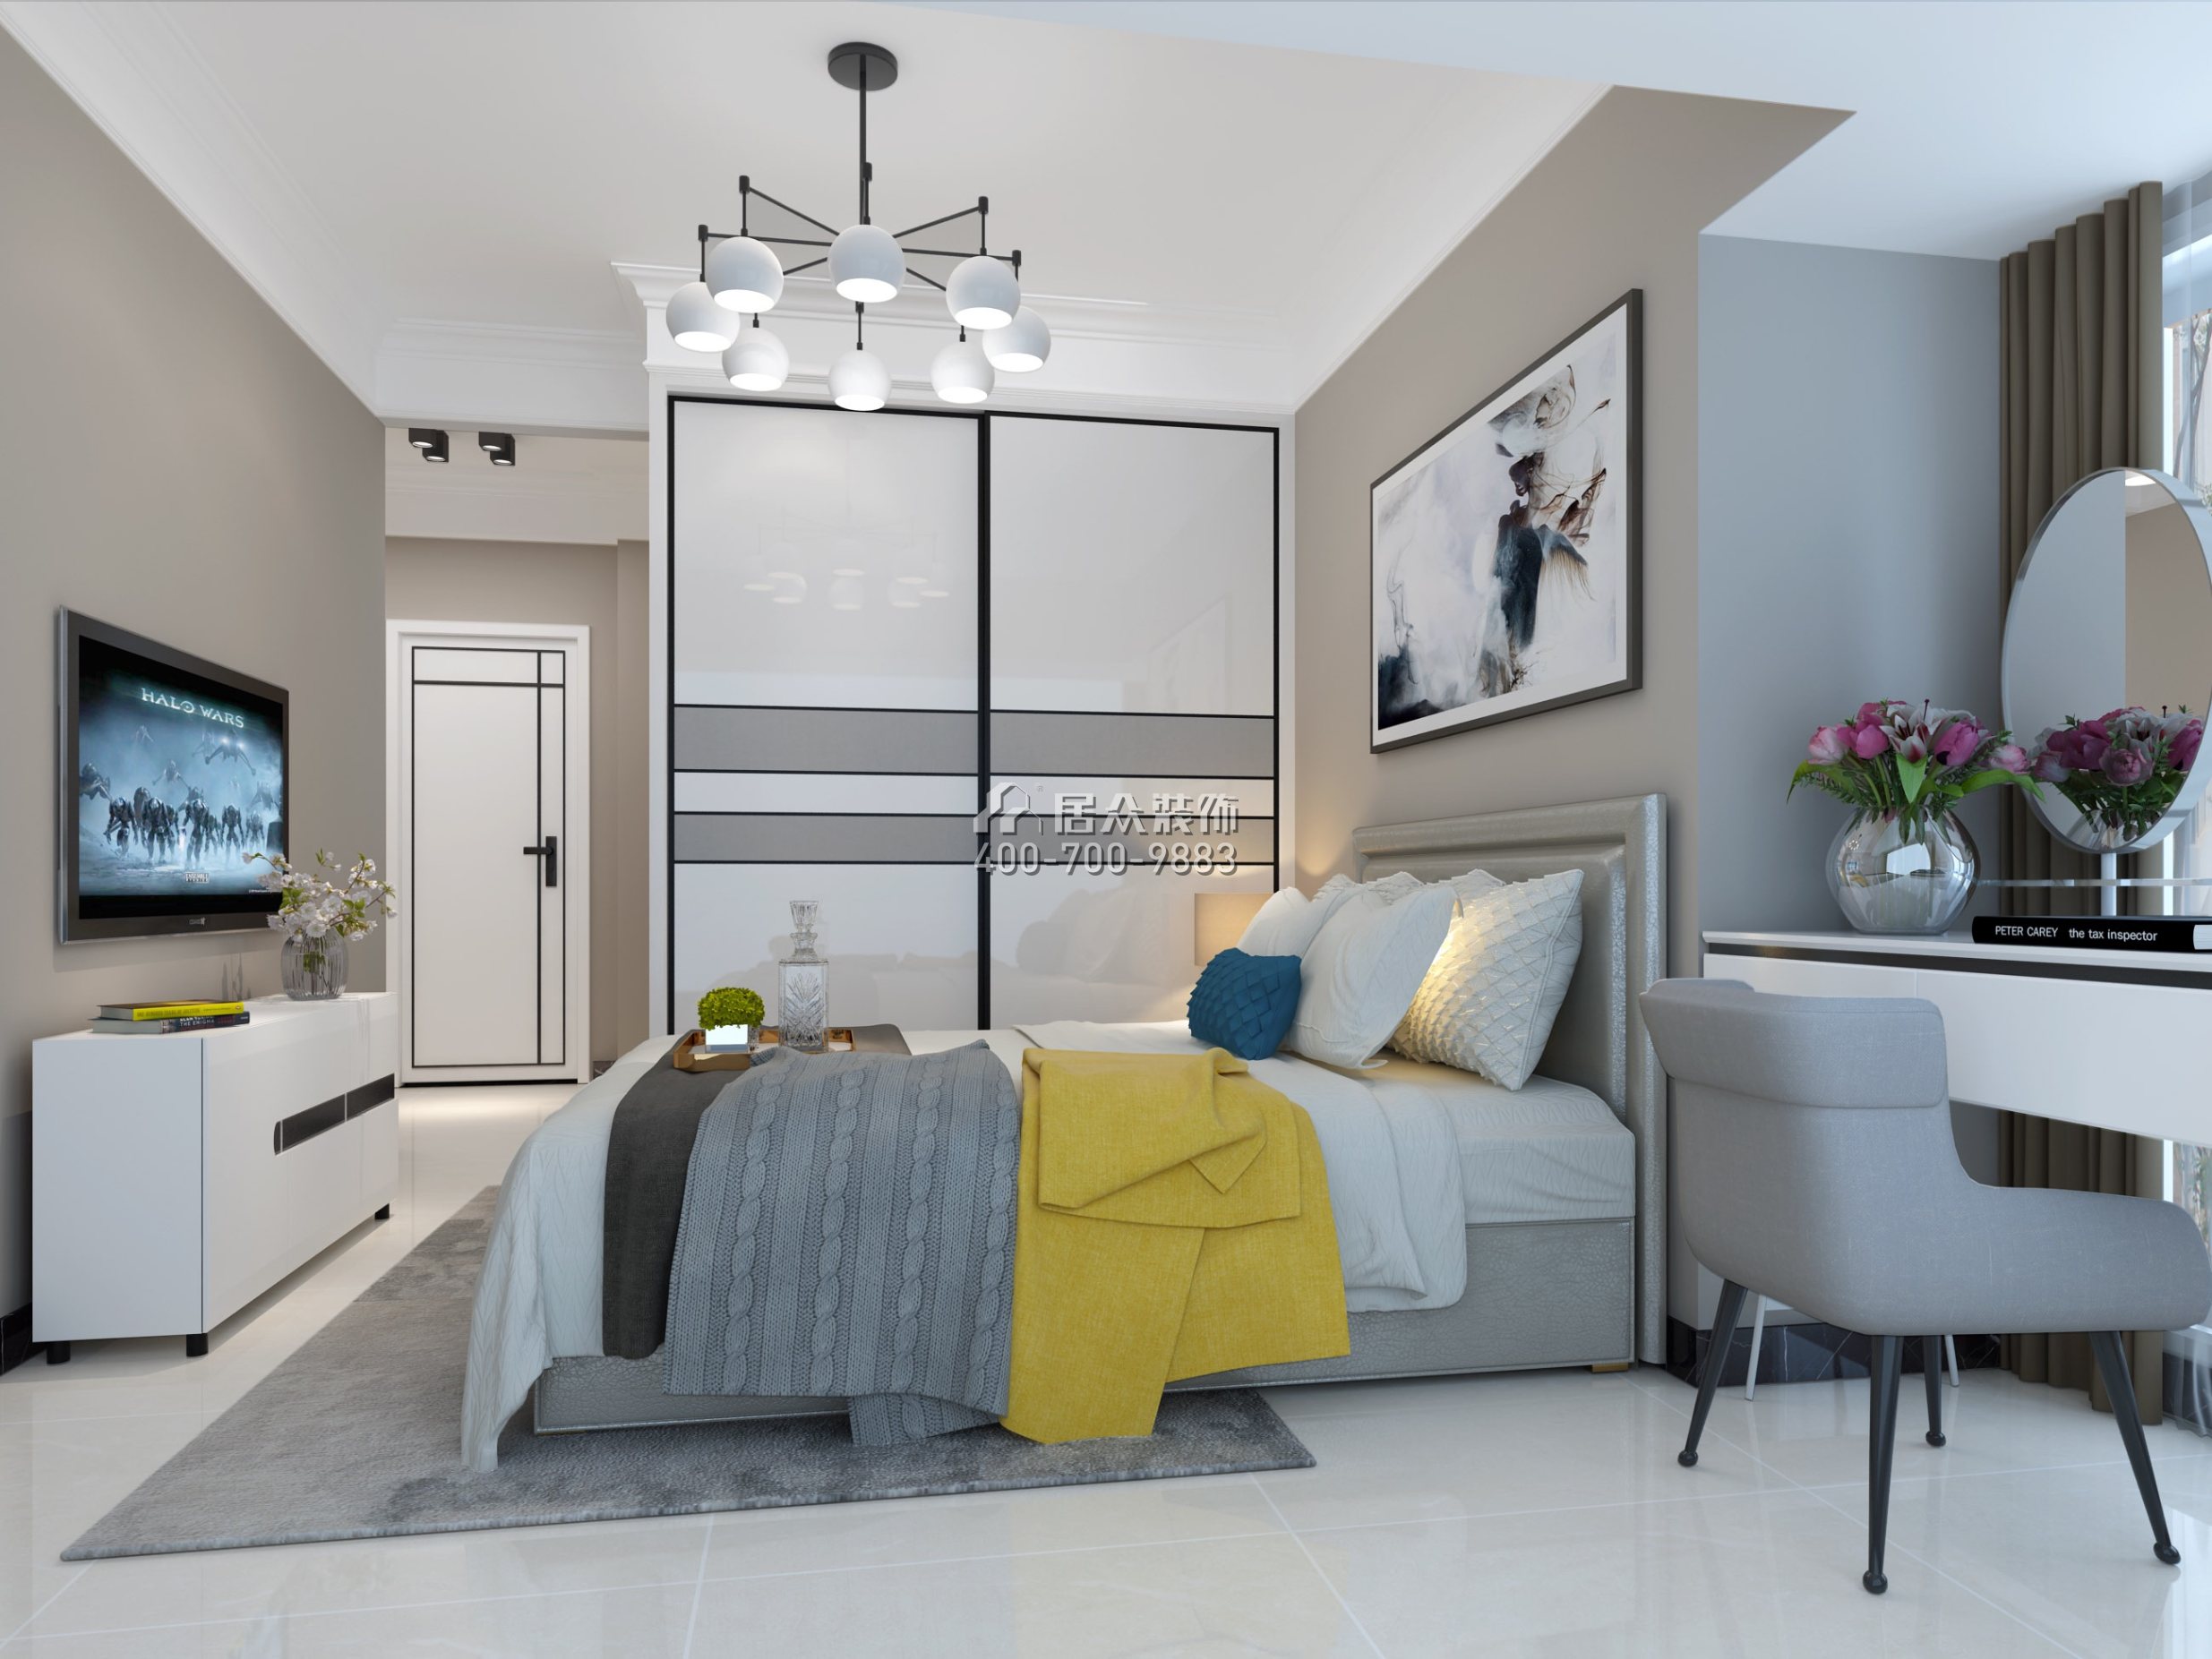 西薈城110平方米現代簡約風格平層戶型臥室裝修效果圖